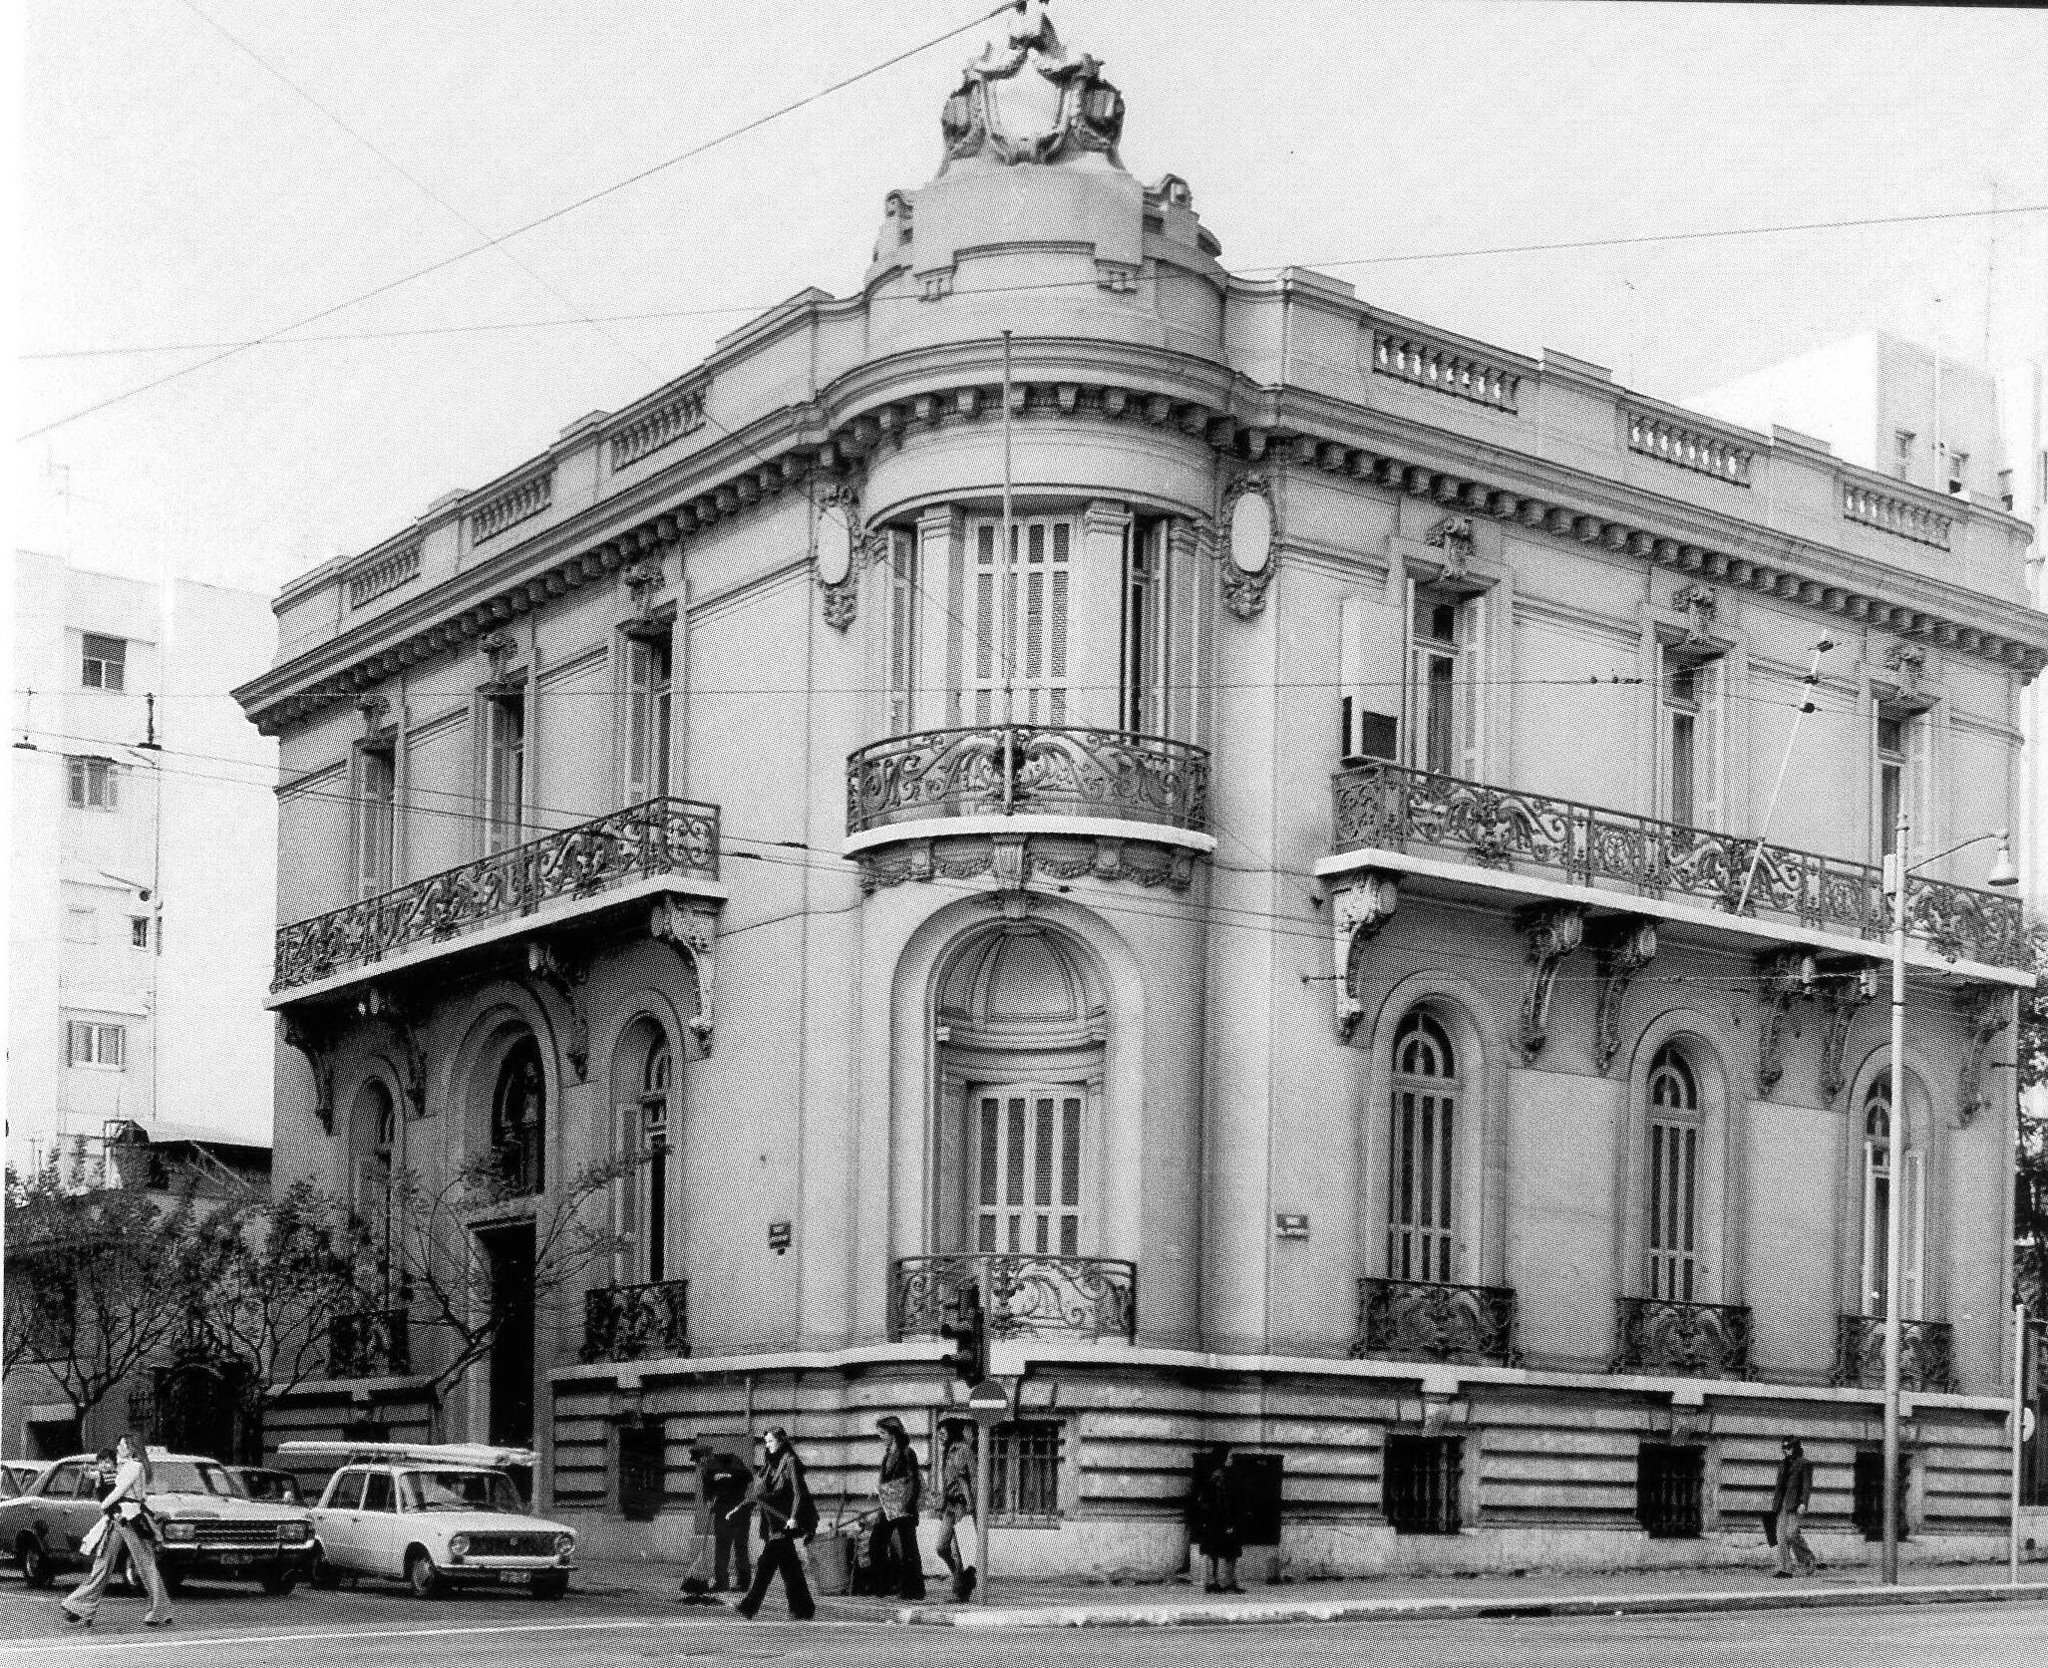 Το μέγαρο που βρίσκεται στη διασταύρωση των οδών Πατησίων και Ηπείρου, οικοδομήθηκε στα 1908-1909, για λογαριασμό του Κεφαλονίτη βιομήχανου Γεράσιμου Λιβιεράτου, βάσει σχεδίων του αρχιτέκτονα Αλέξανδρου Νικολούδη